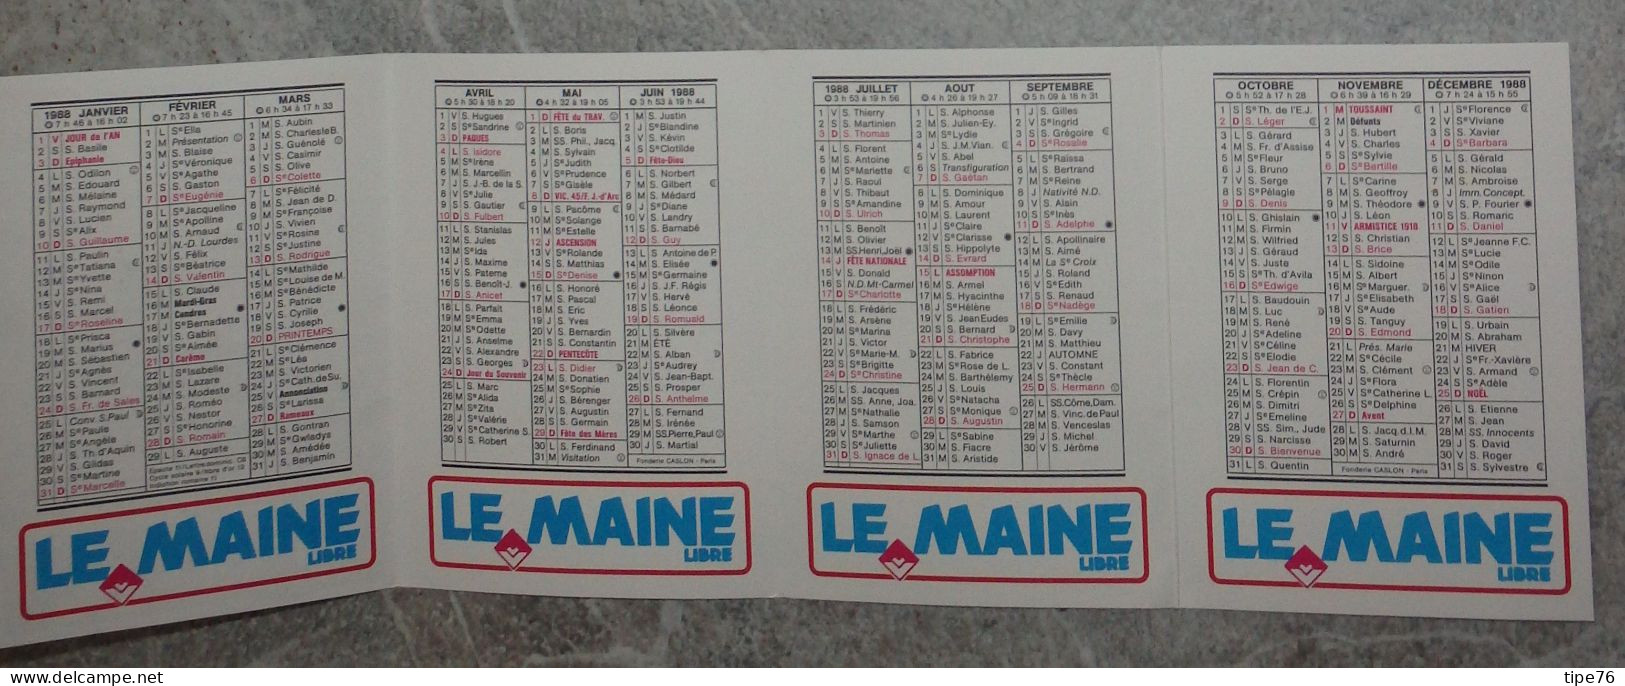 Petit Calendrier De Poche 1988 Journal Le Maine Libre - Le Mans La Flèche Mamers Sablé La Ferté Bernard Voiture - Small : 1981-90